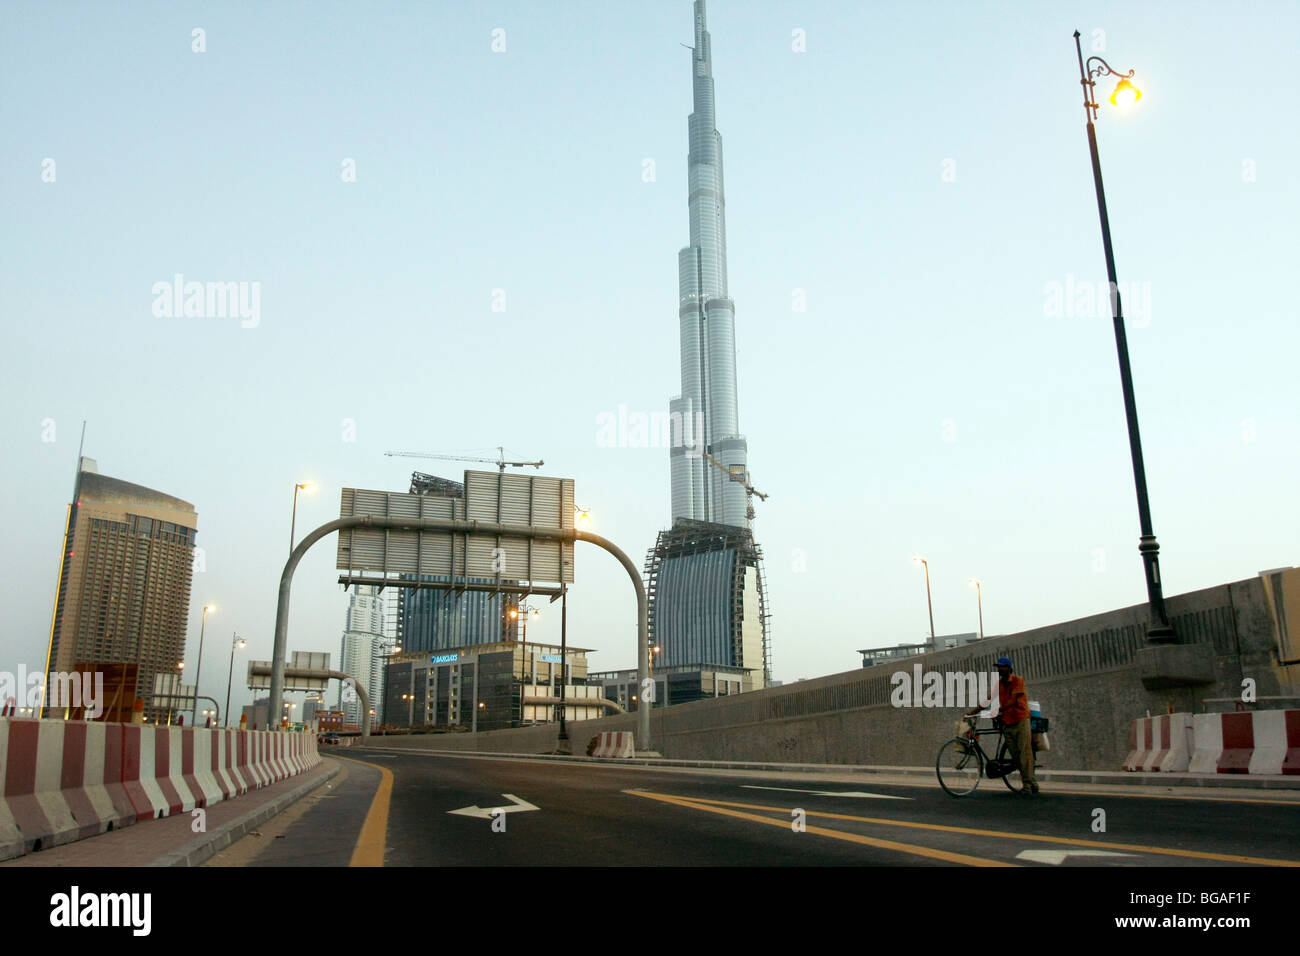 Die hohe schmalere Gebäude ist der Burj Tower in Dubai, der weltweit höchste Gebäude auf 818 m (2.684 ft), Dubai, Vereinigte Arabische Emirate. Stockfoto